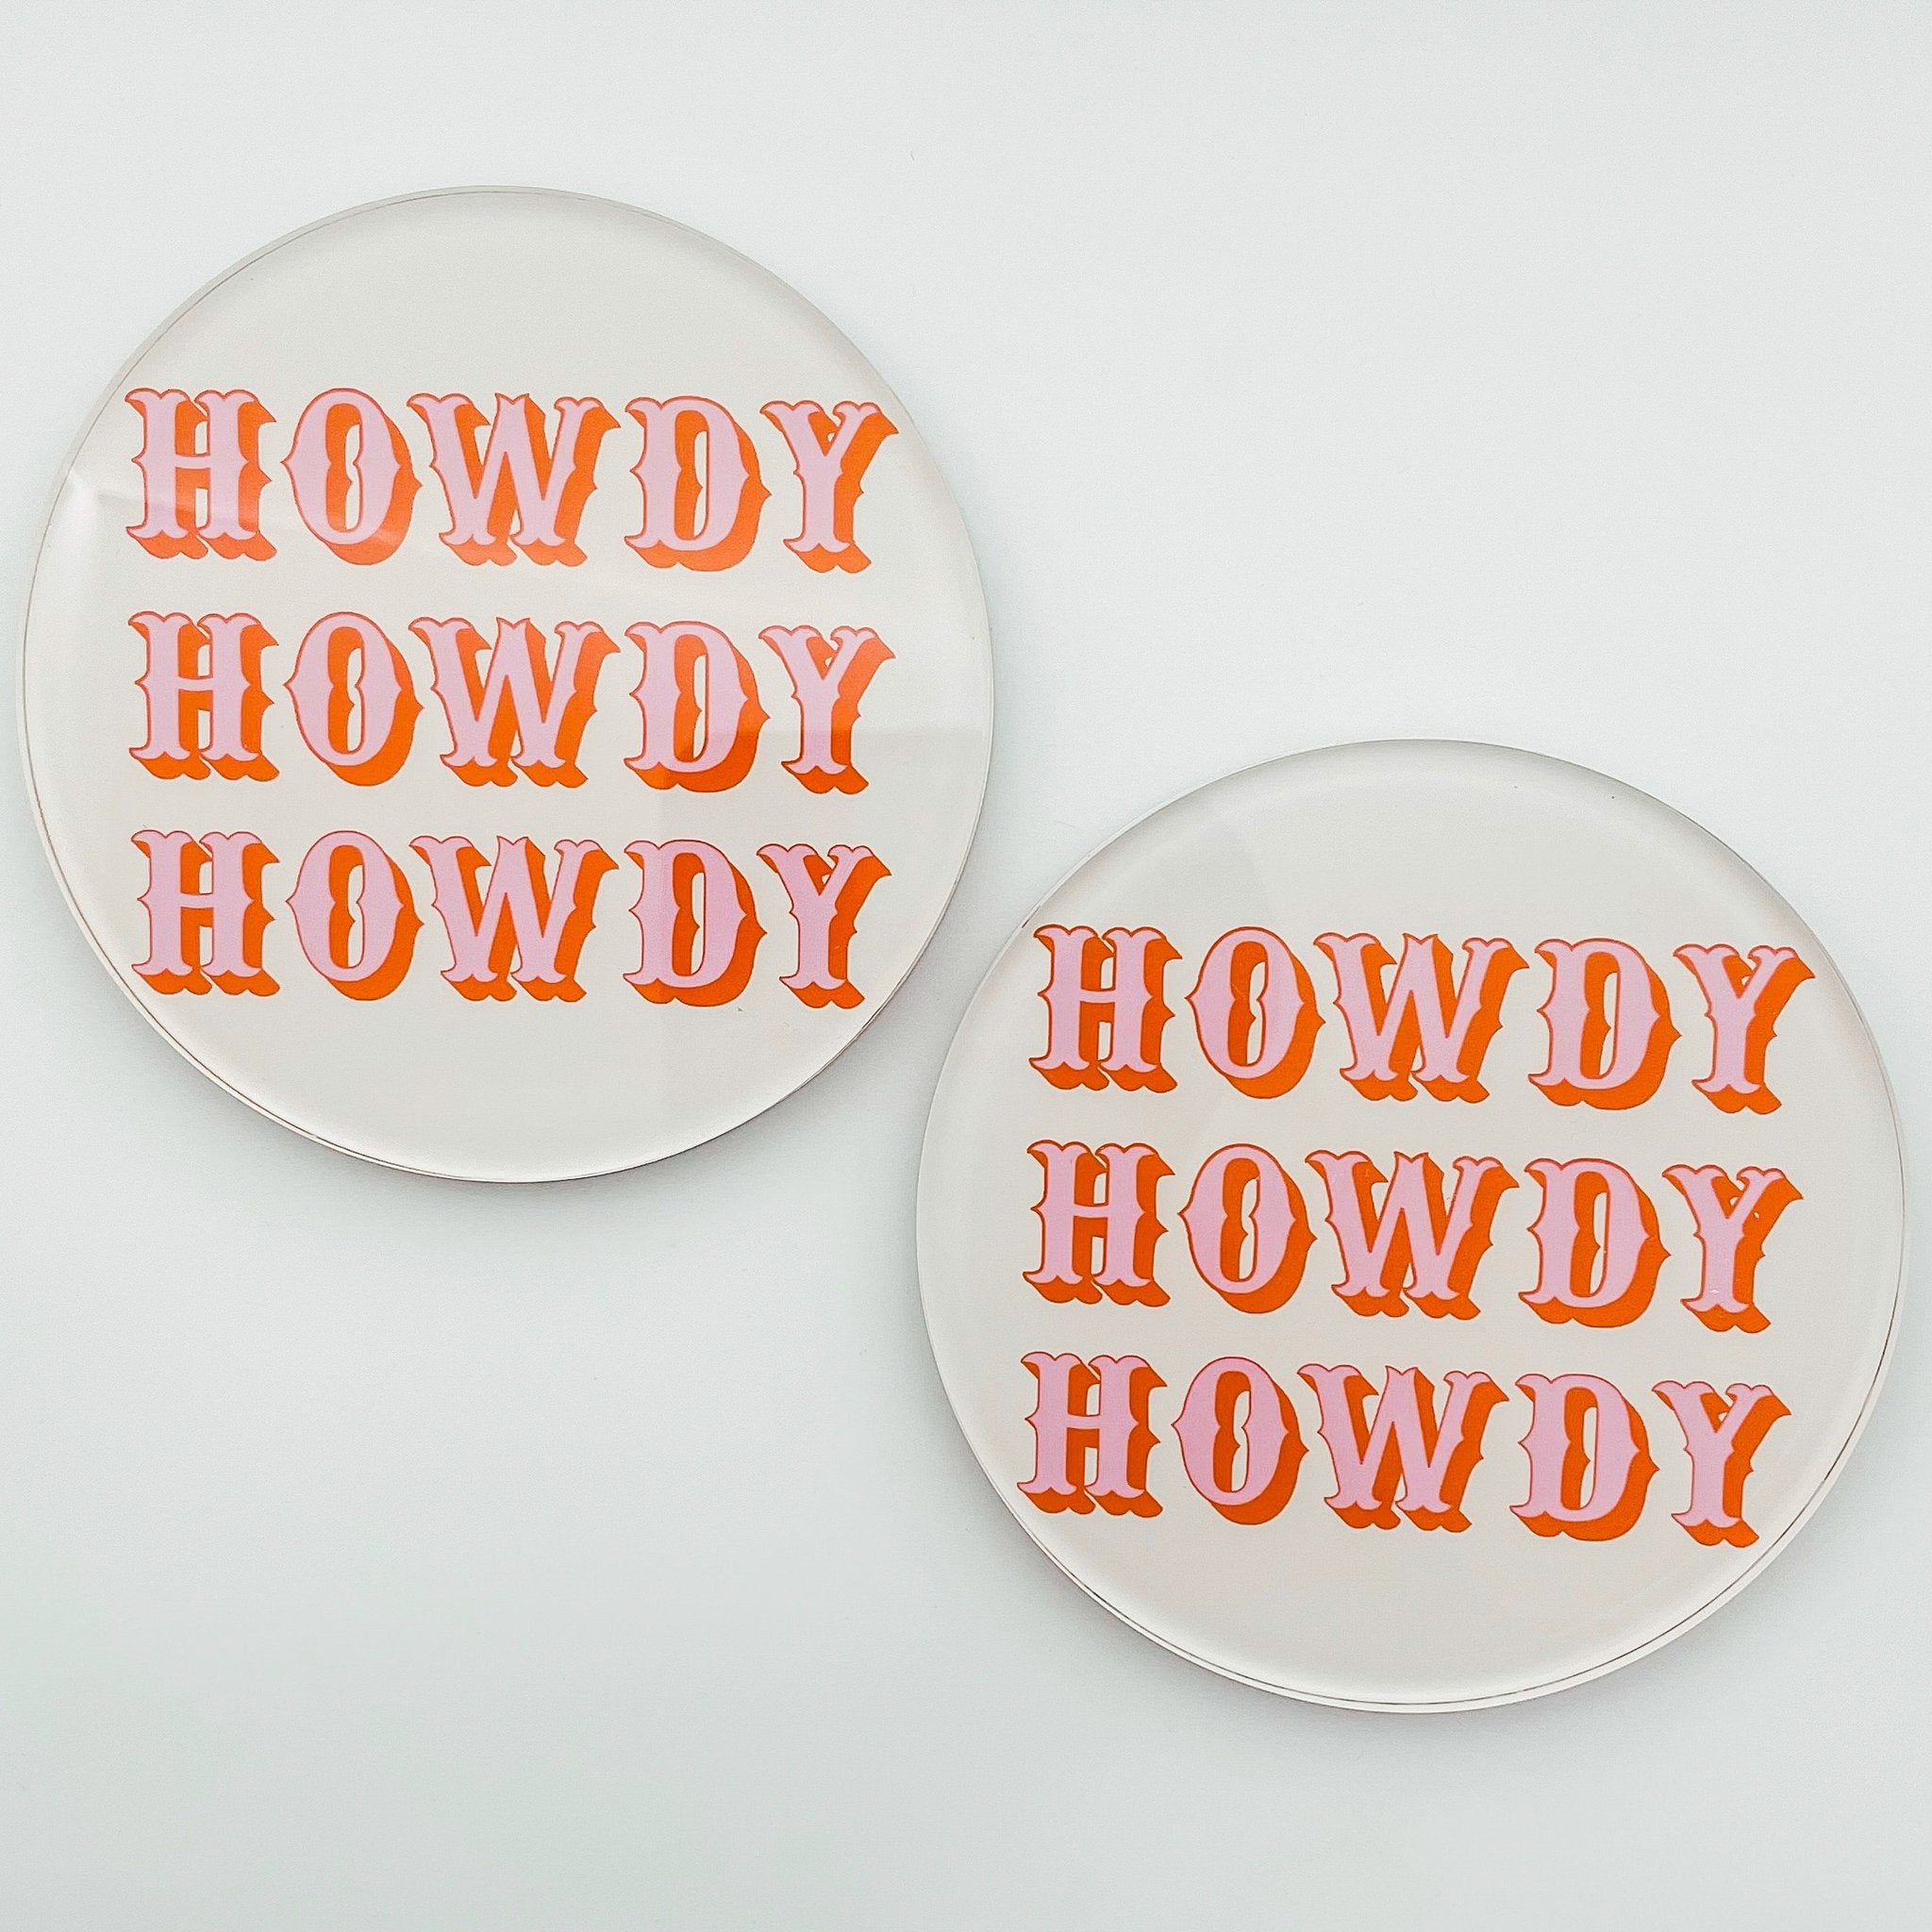 Howdy Honey Coasters